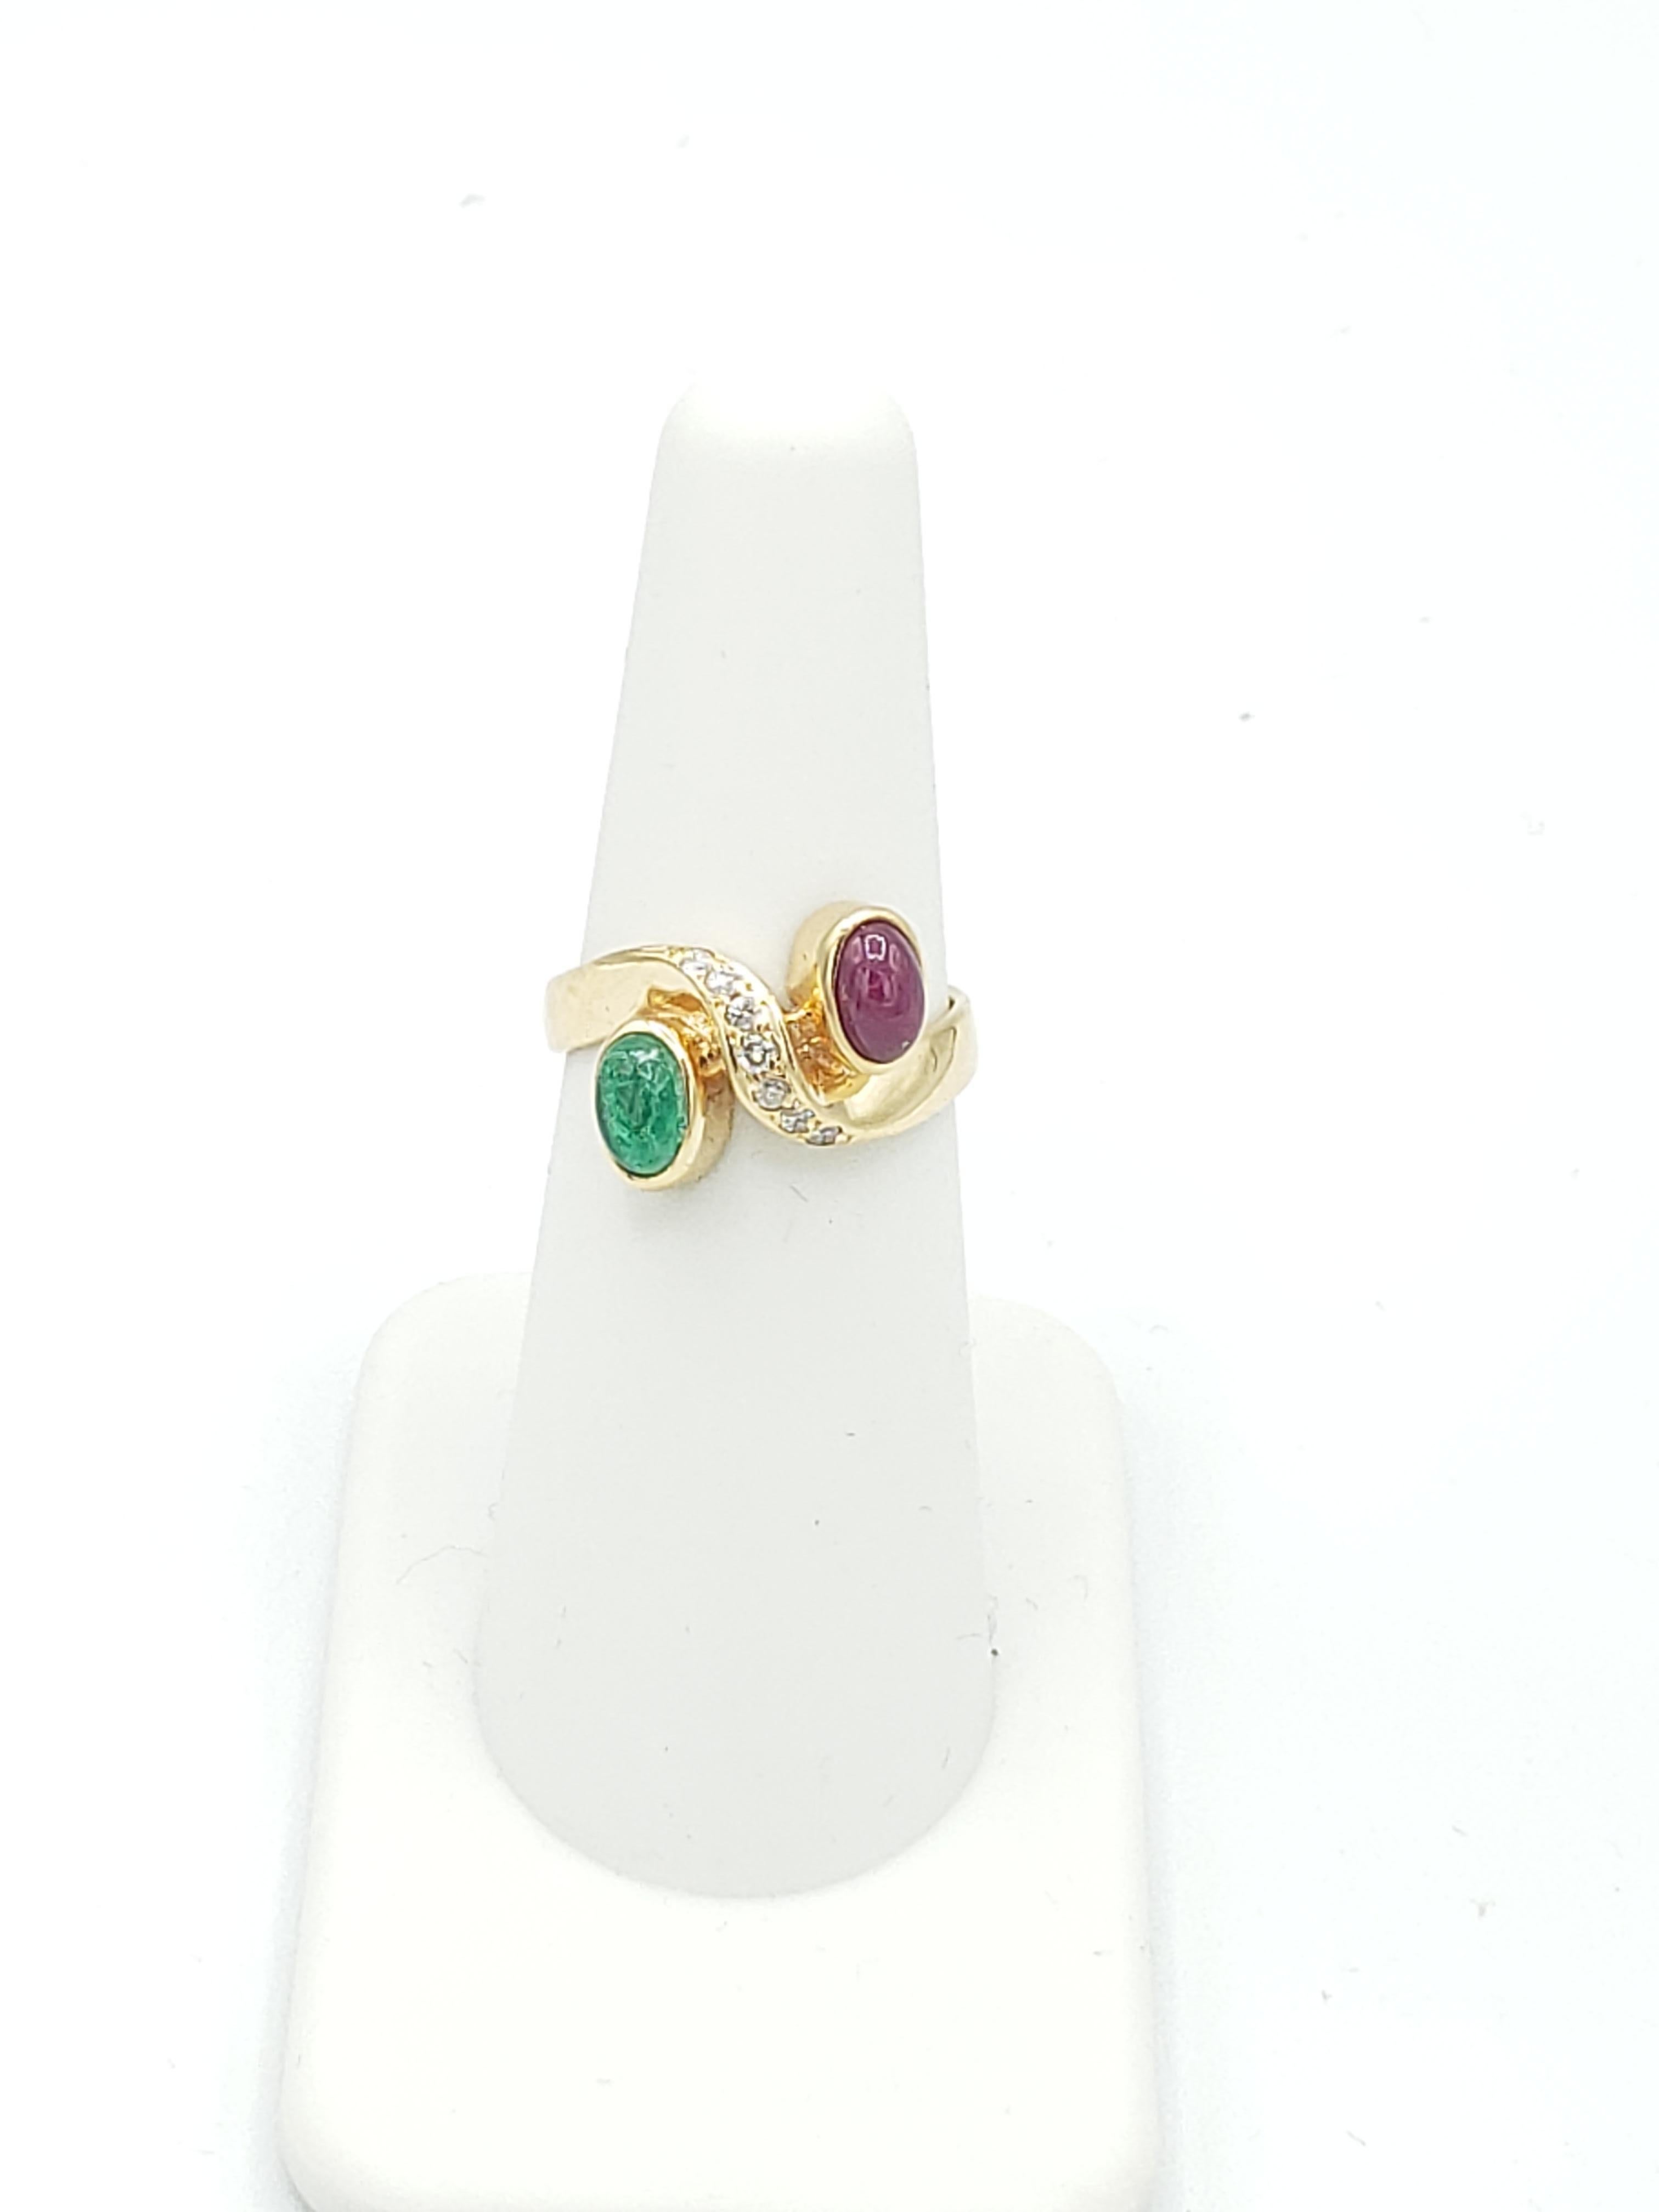 Dieser atemberaubende Ring von LaFrancee besteht aus einem wunderschönen ovalen Rubin und einem Smaragd, gefasst in massivem 14-karätigem Gelbgold. Die Edelsteine werden von schillernden Diamanten akzentuiert, was diesen Ring zu einem wahrhaft